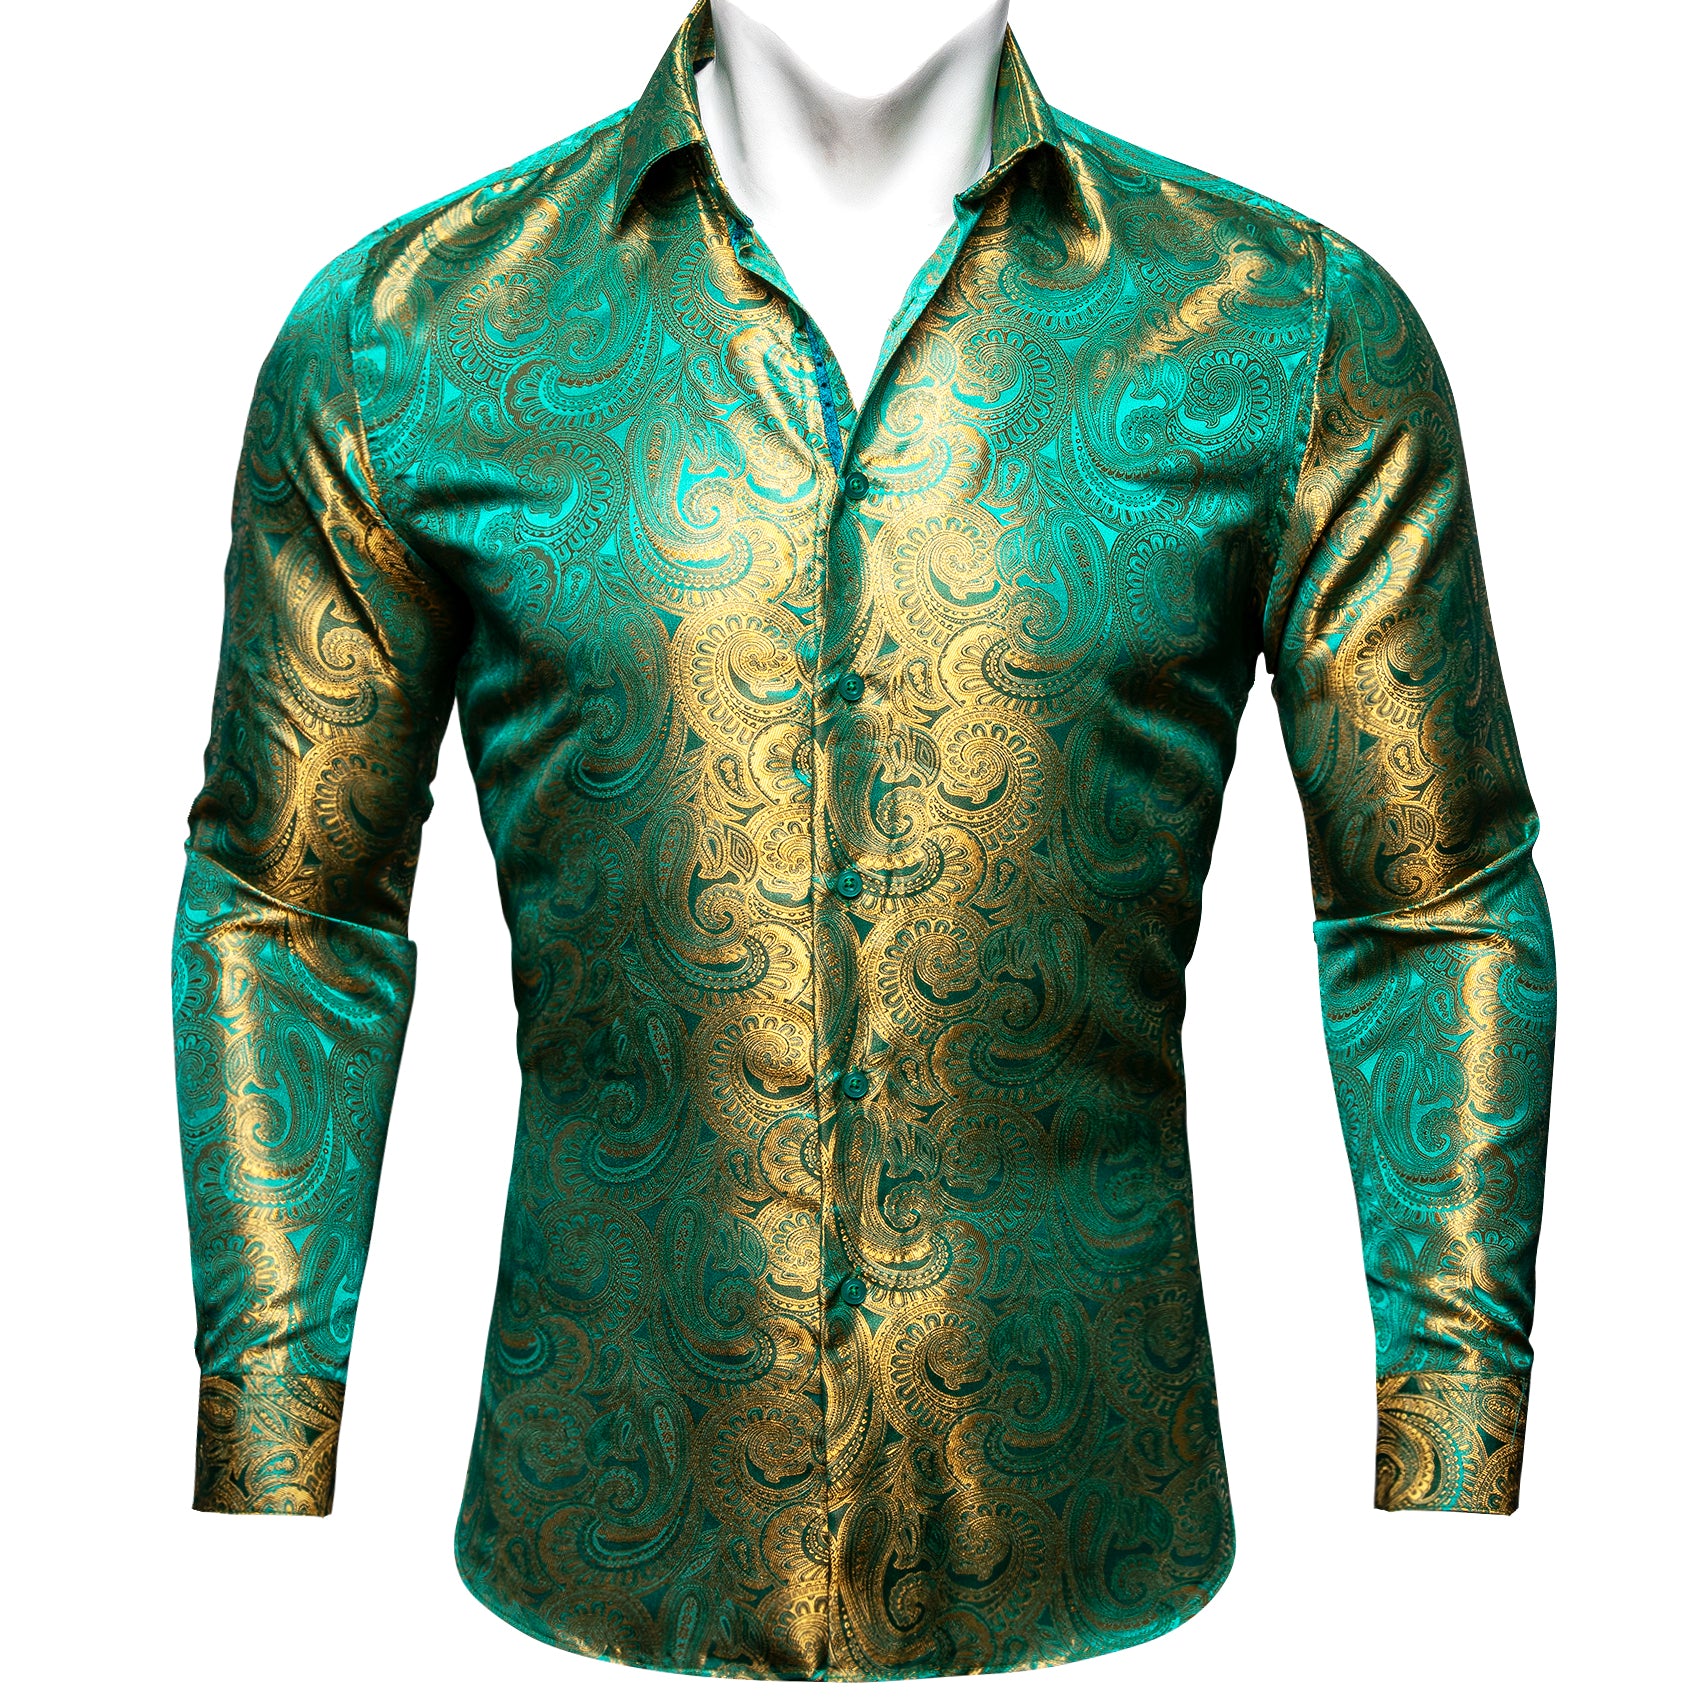 Barry.wang Button Down Shirt Green Gold Paisley Silk Men's Shirt